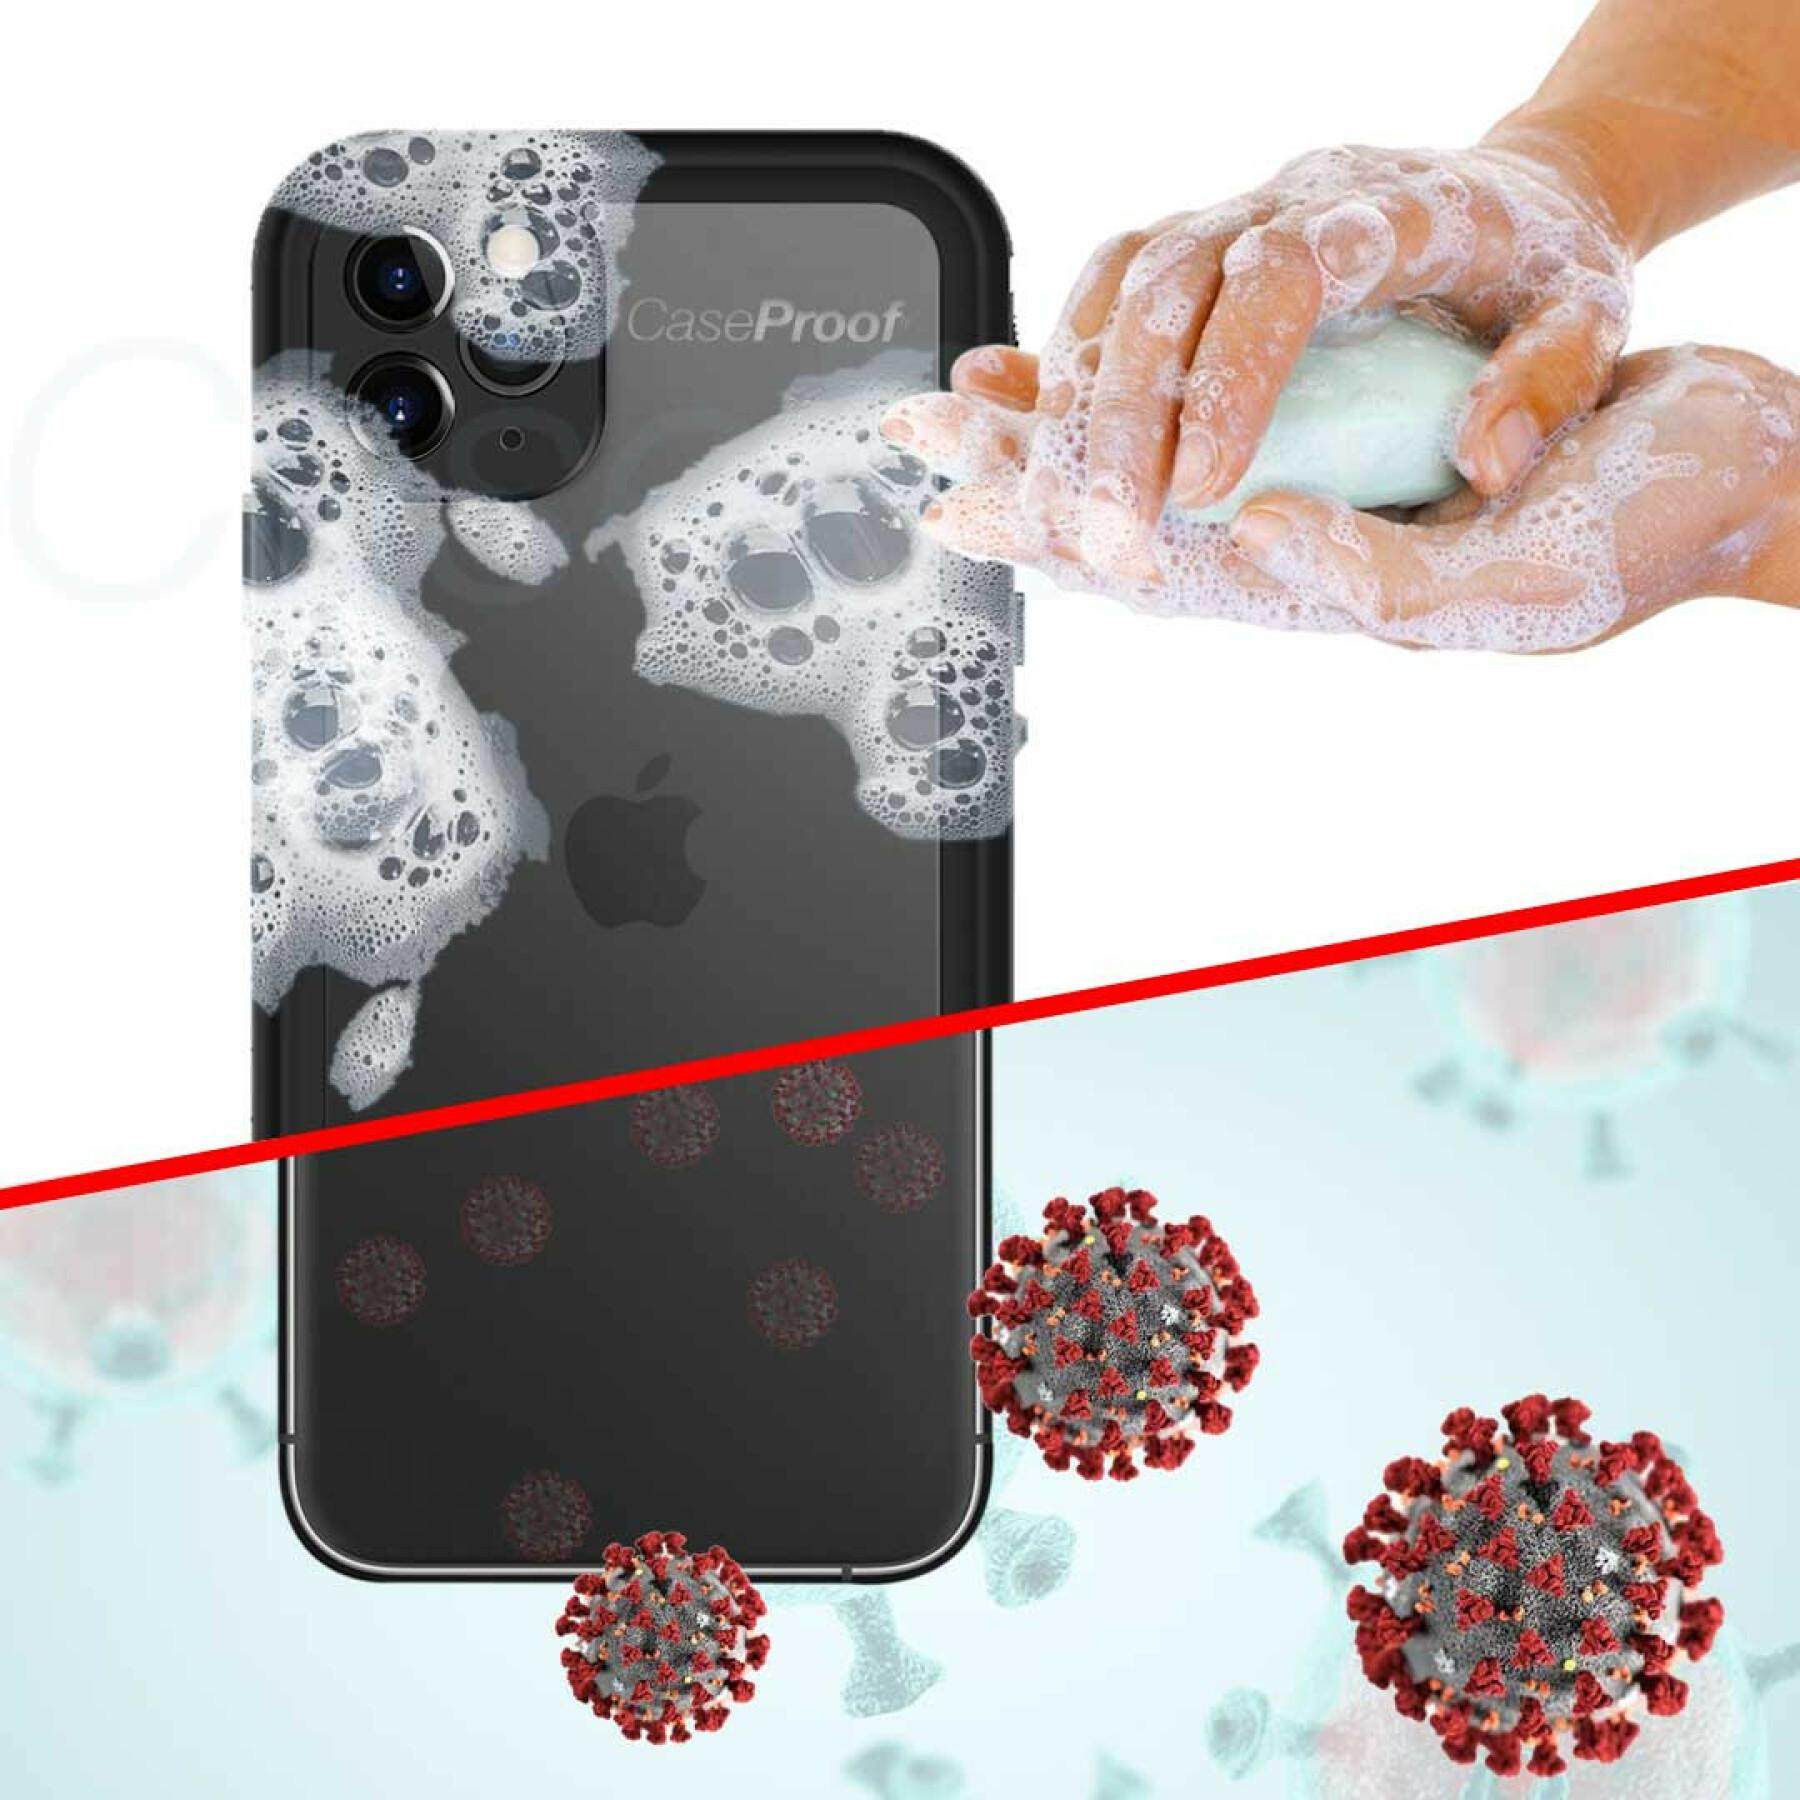 Coque smartphone iPhone Xr étanche et antichoc waterproof CaseProof